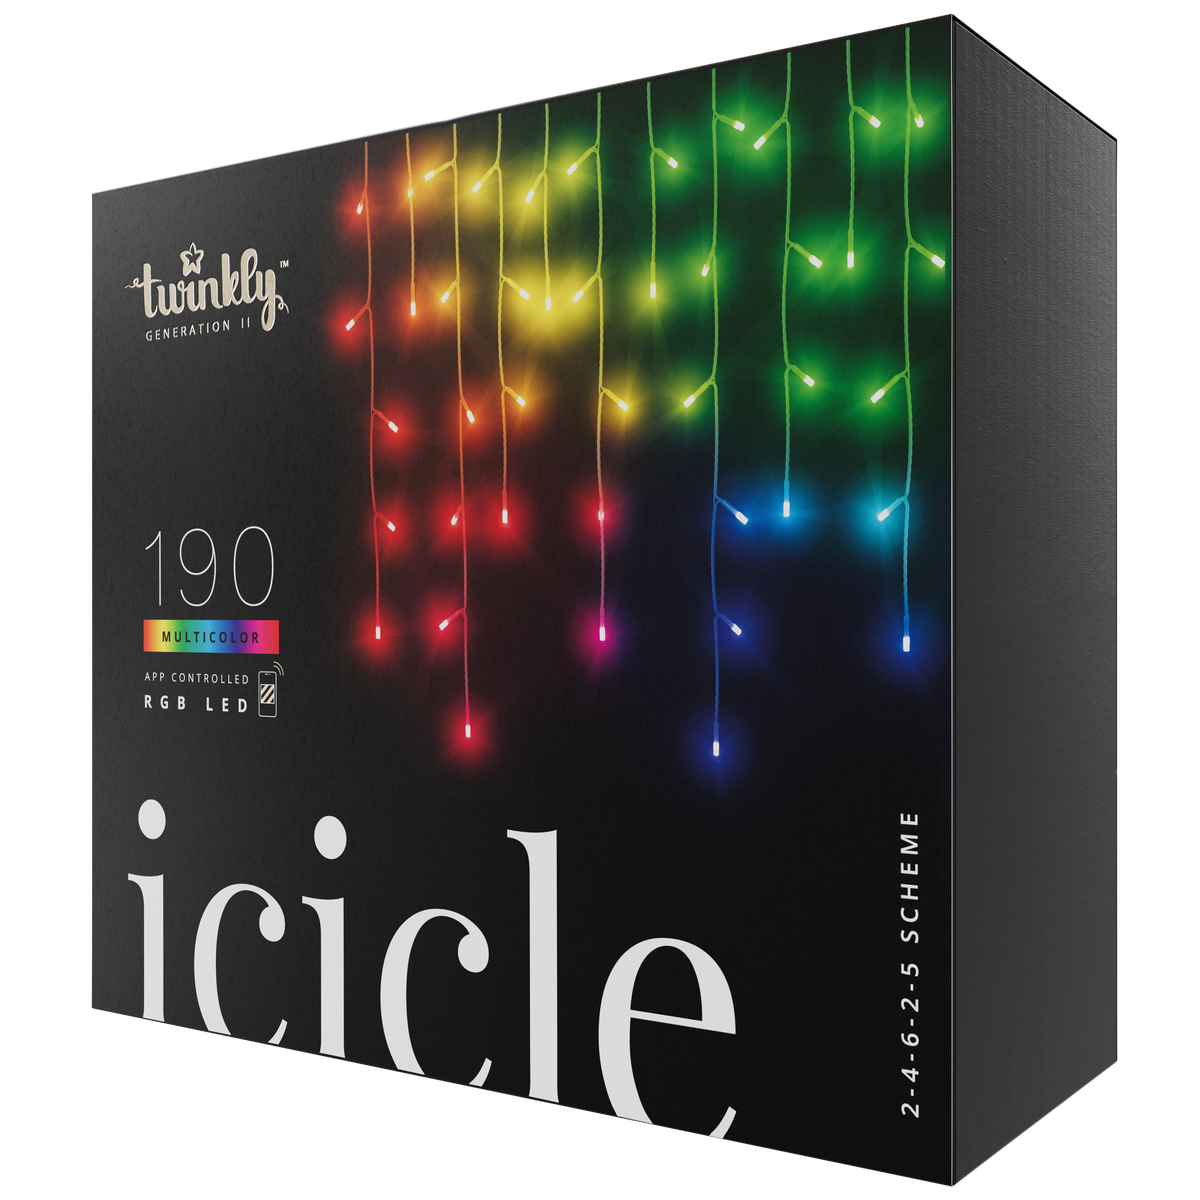 Icicle (edición multicolor)